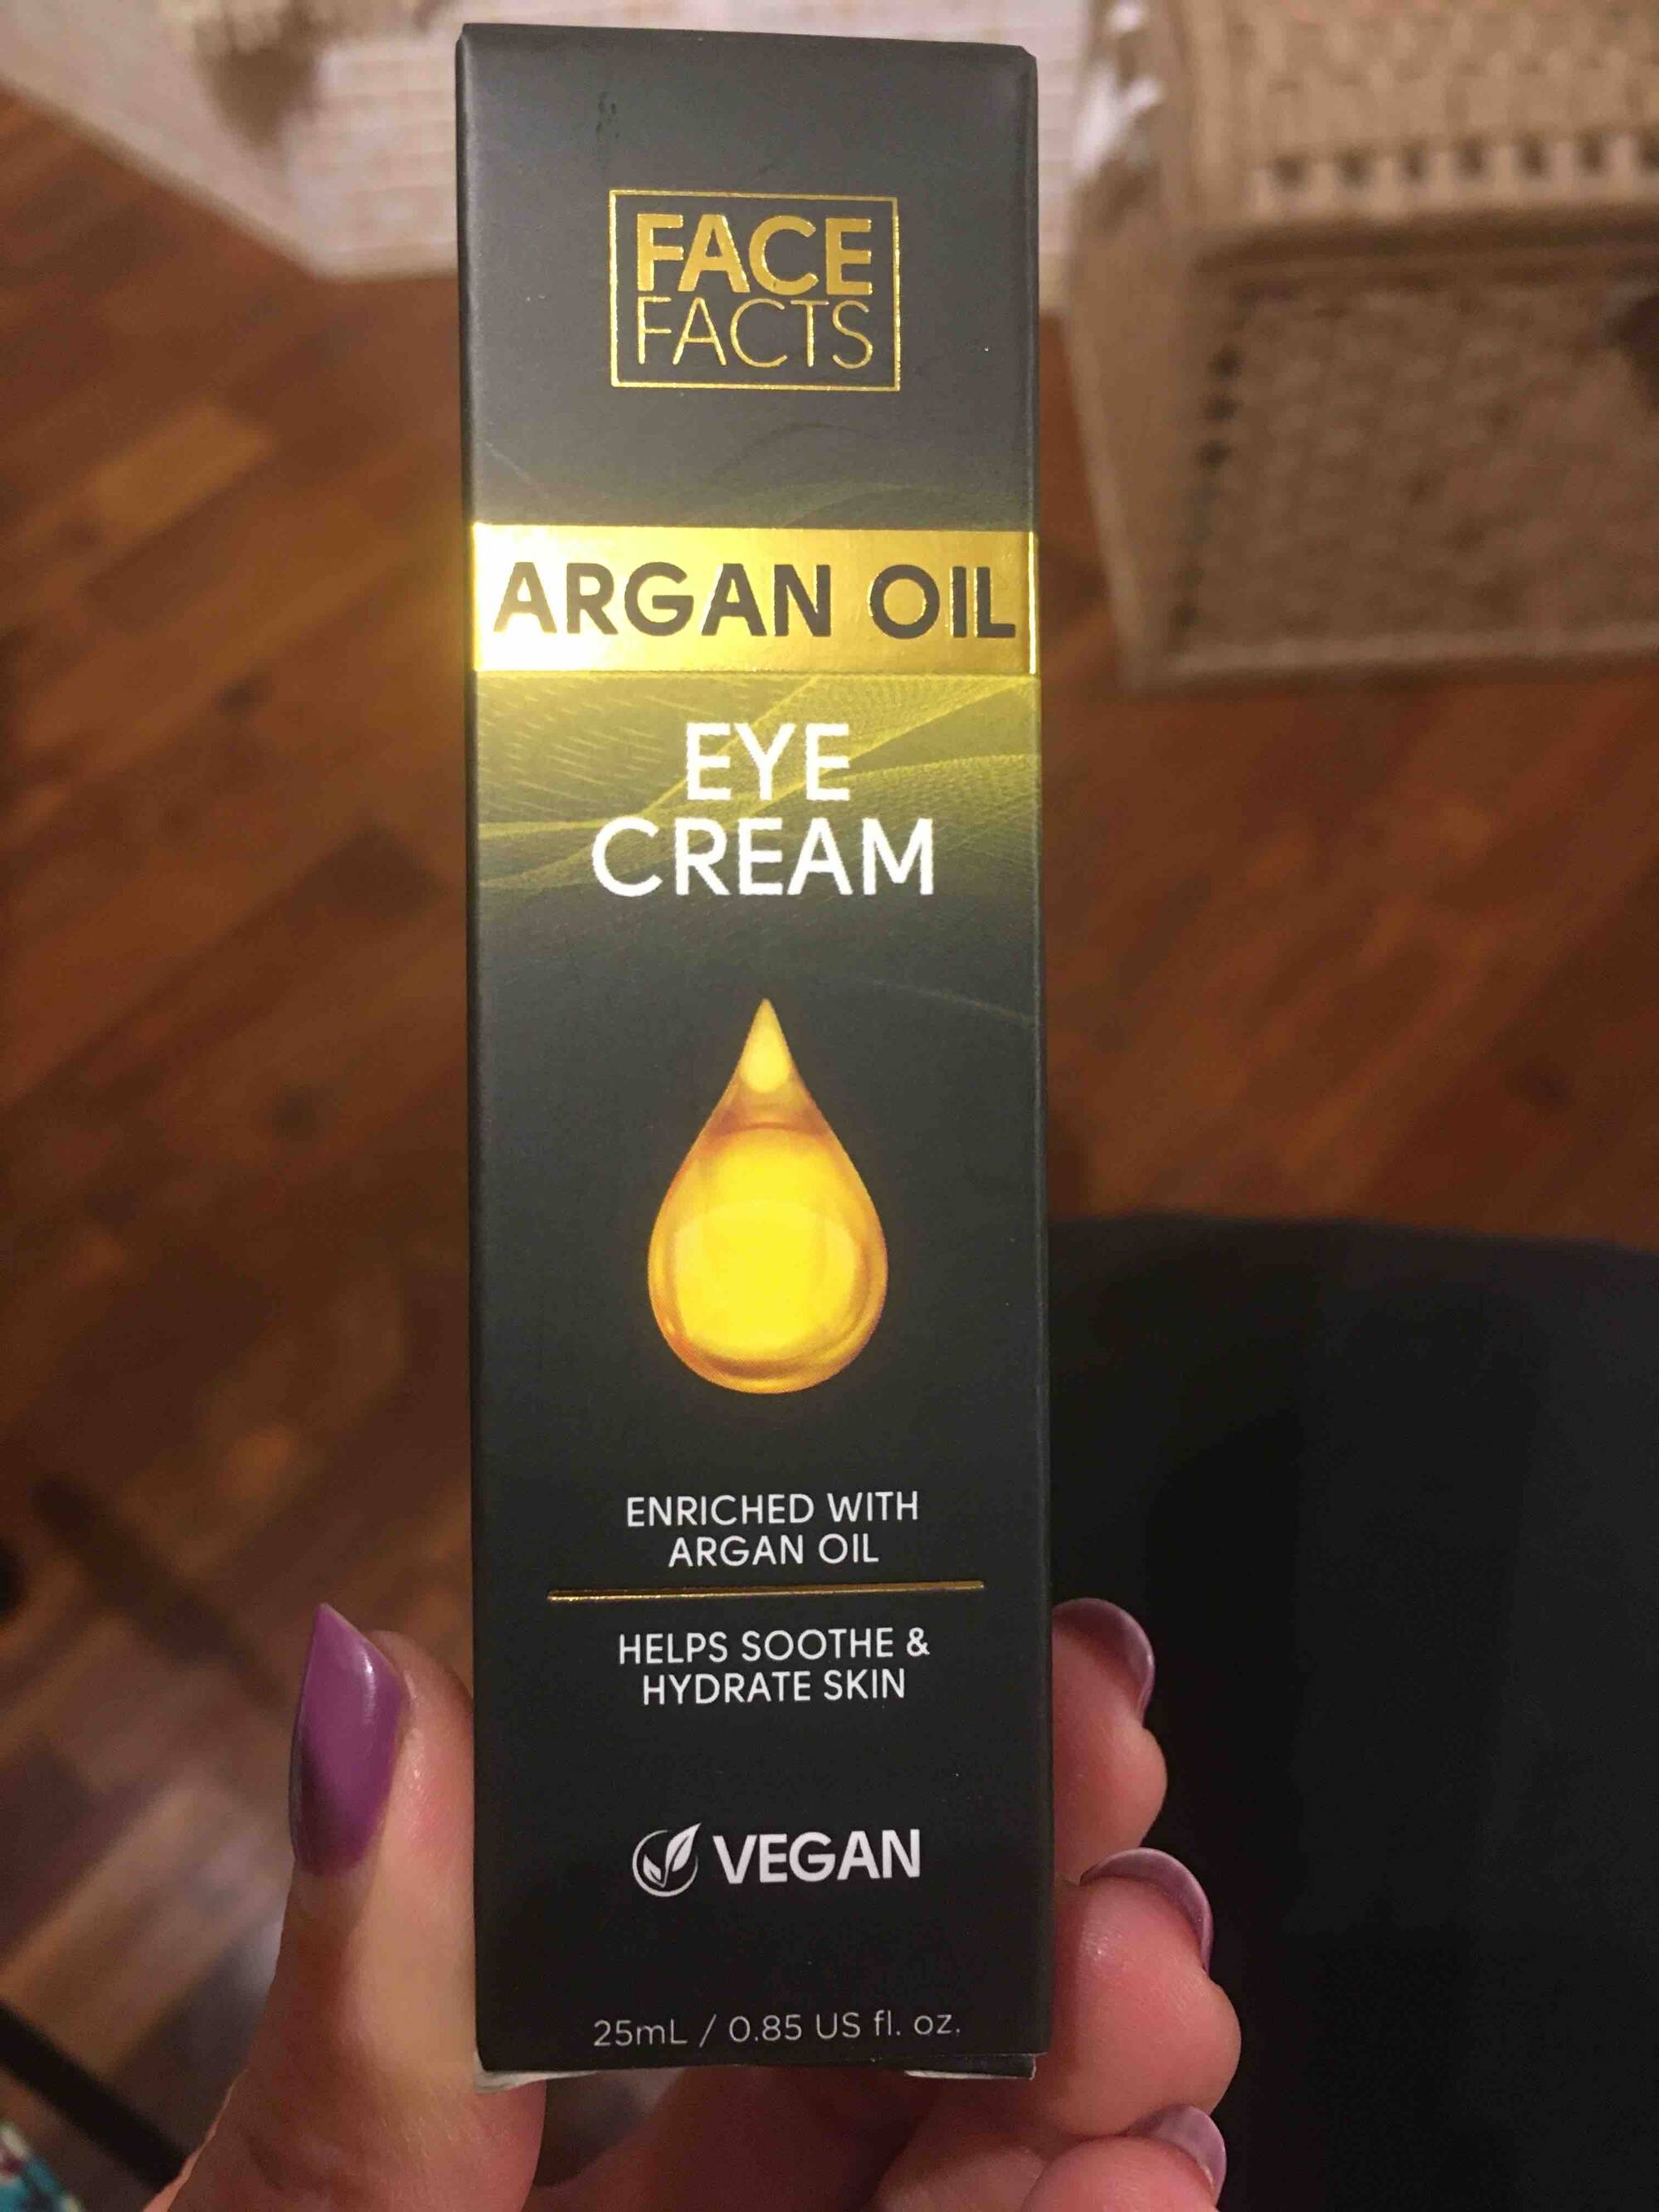 FACE FACTS - Argan oil - Eye cream